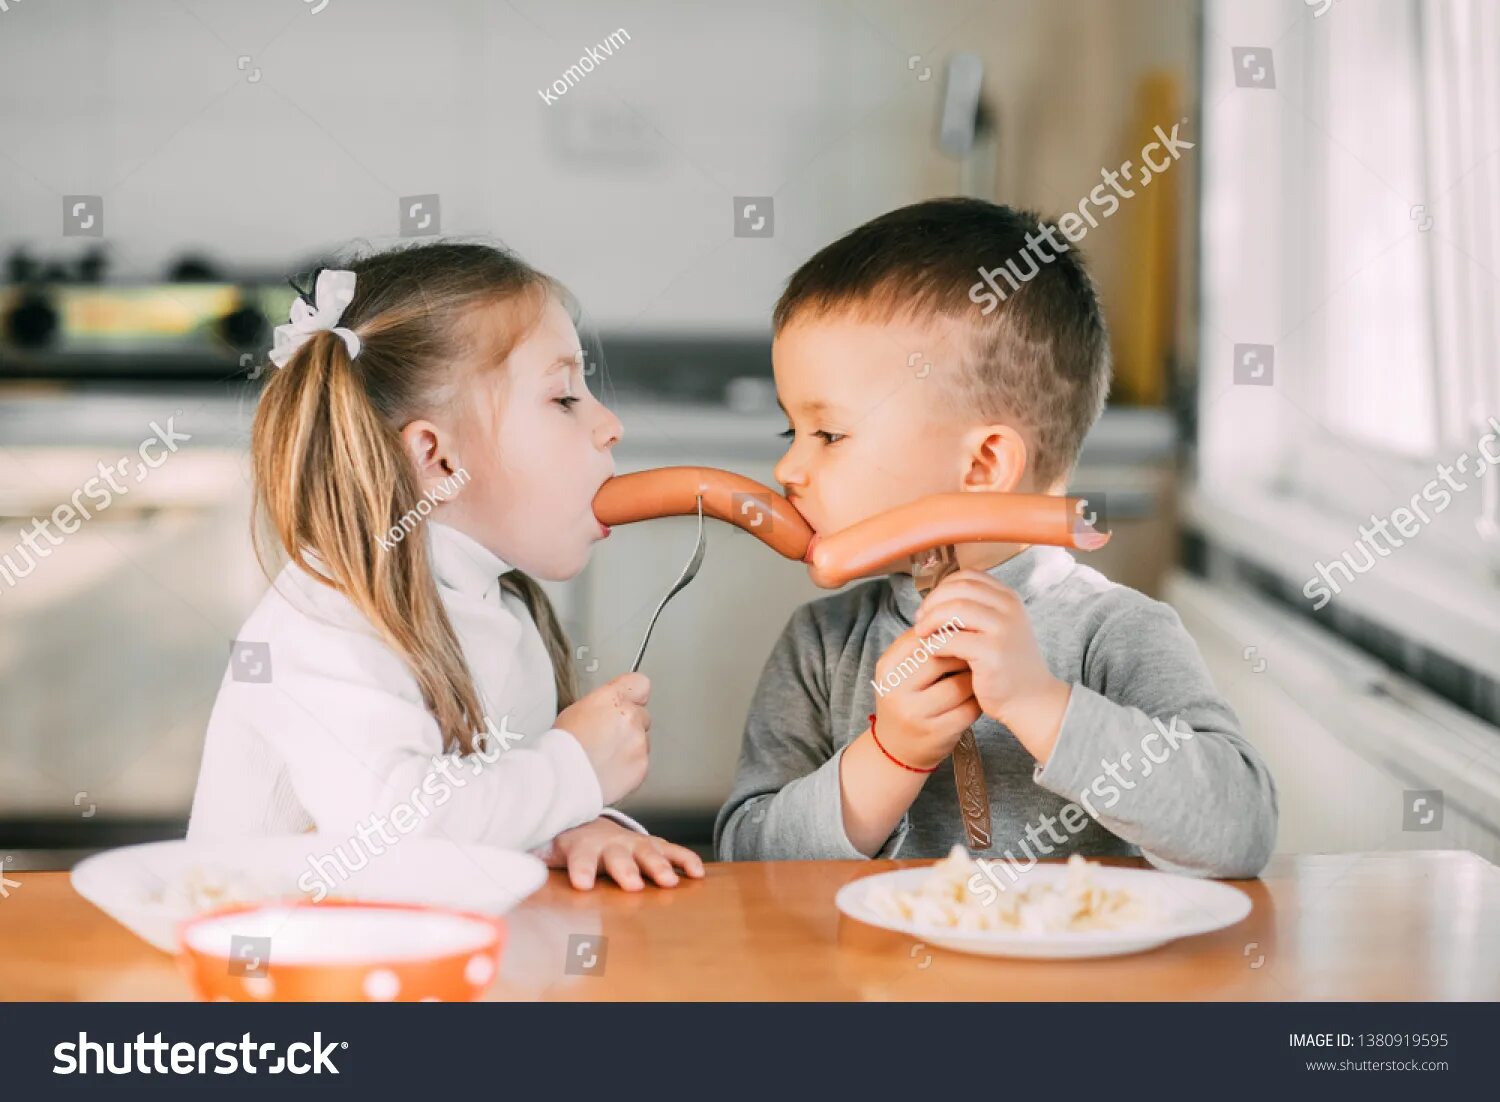 Семья ест колбасу. Семья ест сосиски. Сосиски для детей. Девочка ест сосиску. Licking boy girl